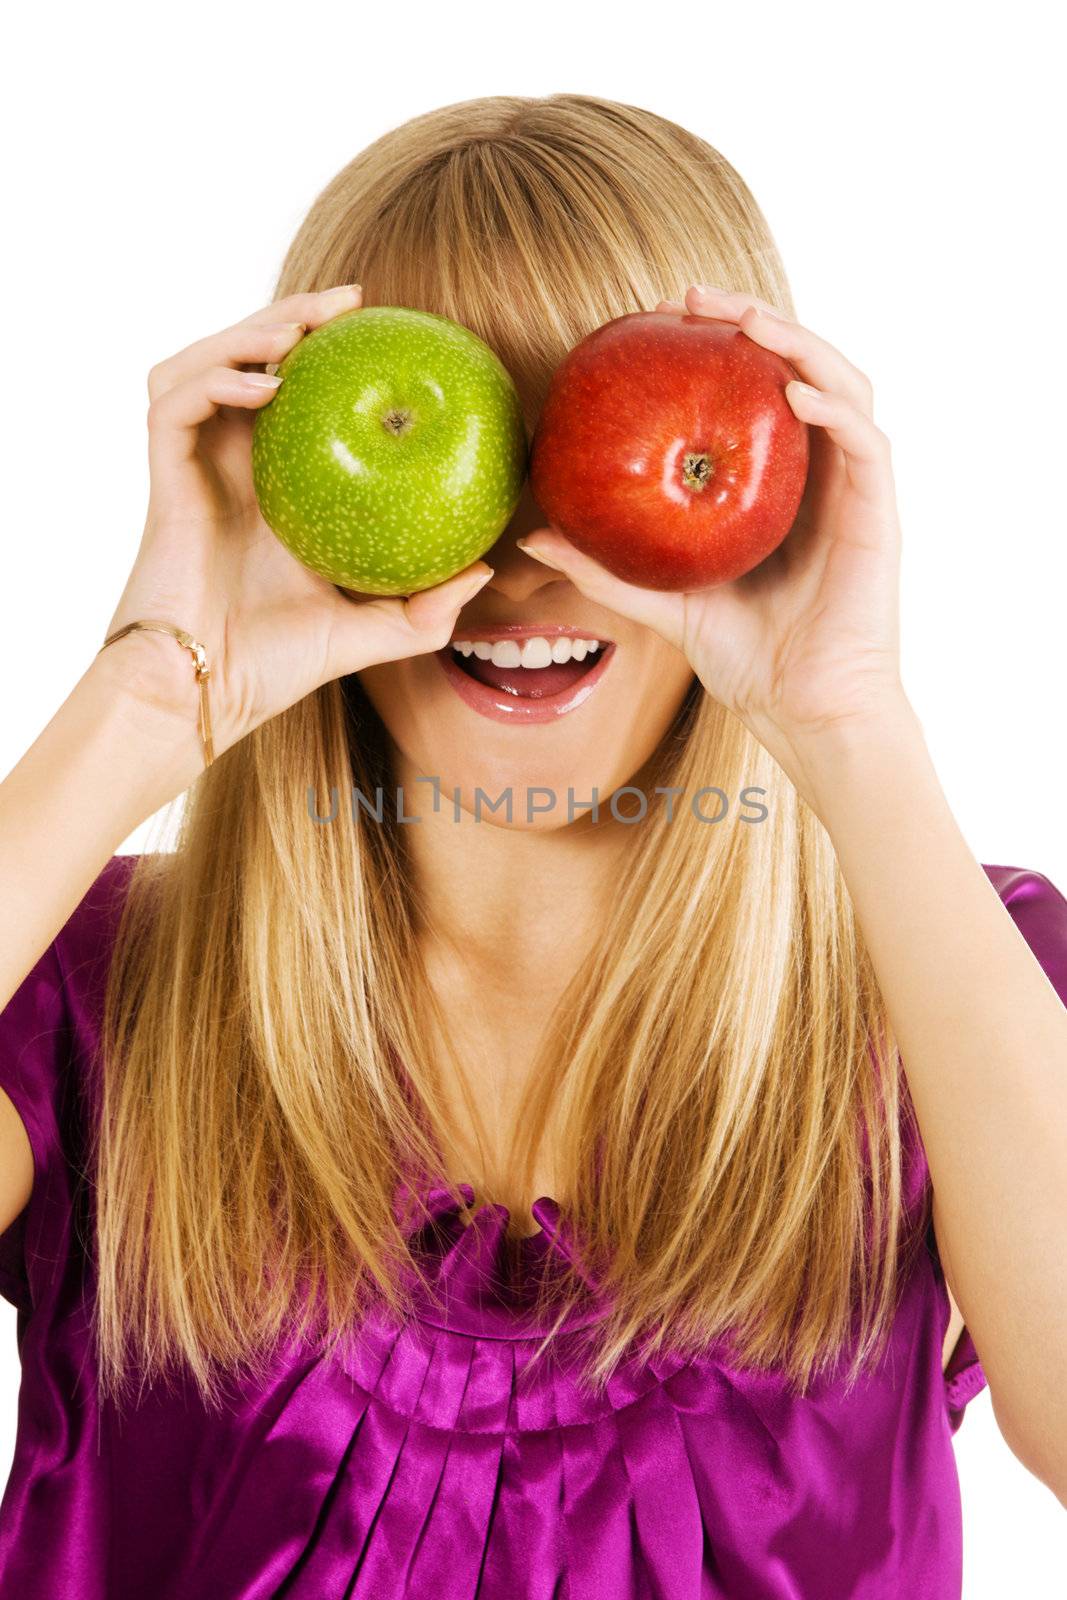 Funny girl holding two apples by Gdolgikh